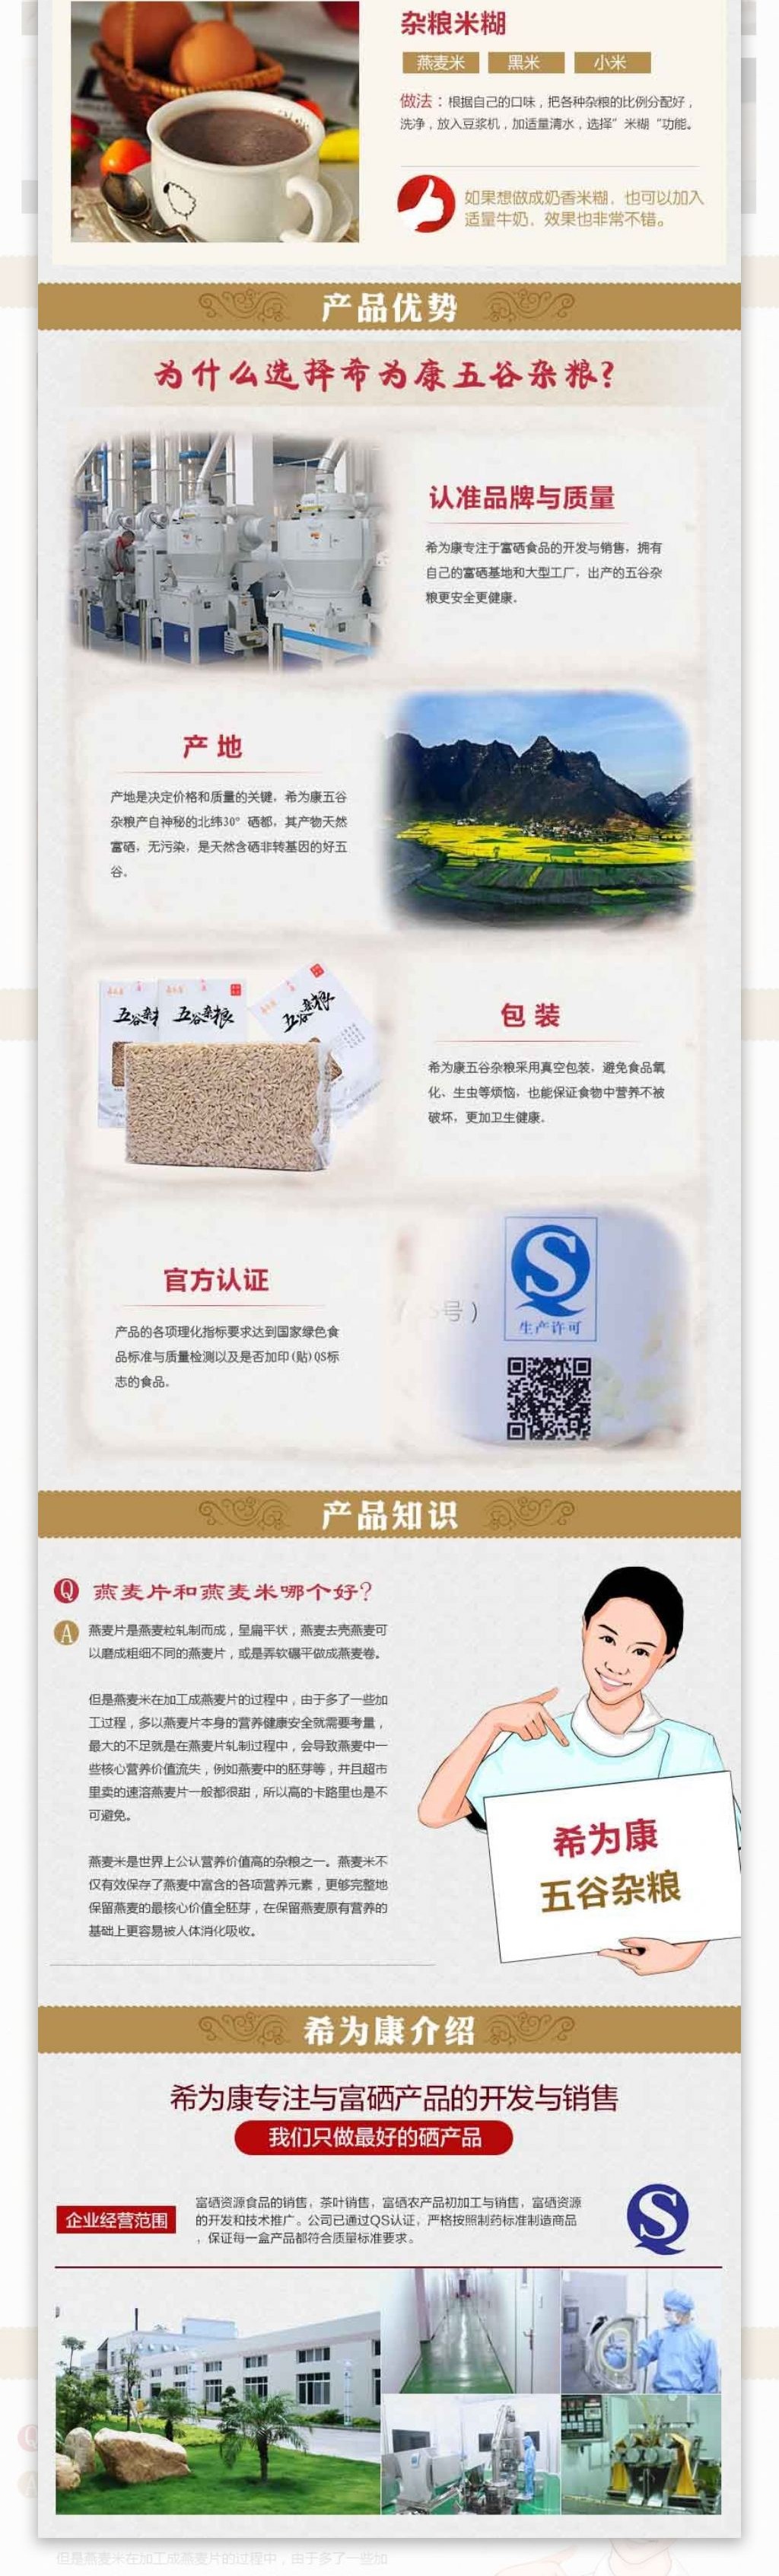 燕麦米淘宝详情页设计